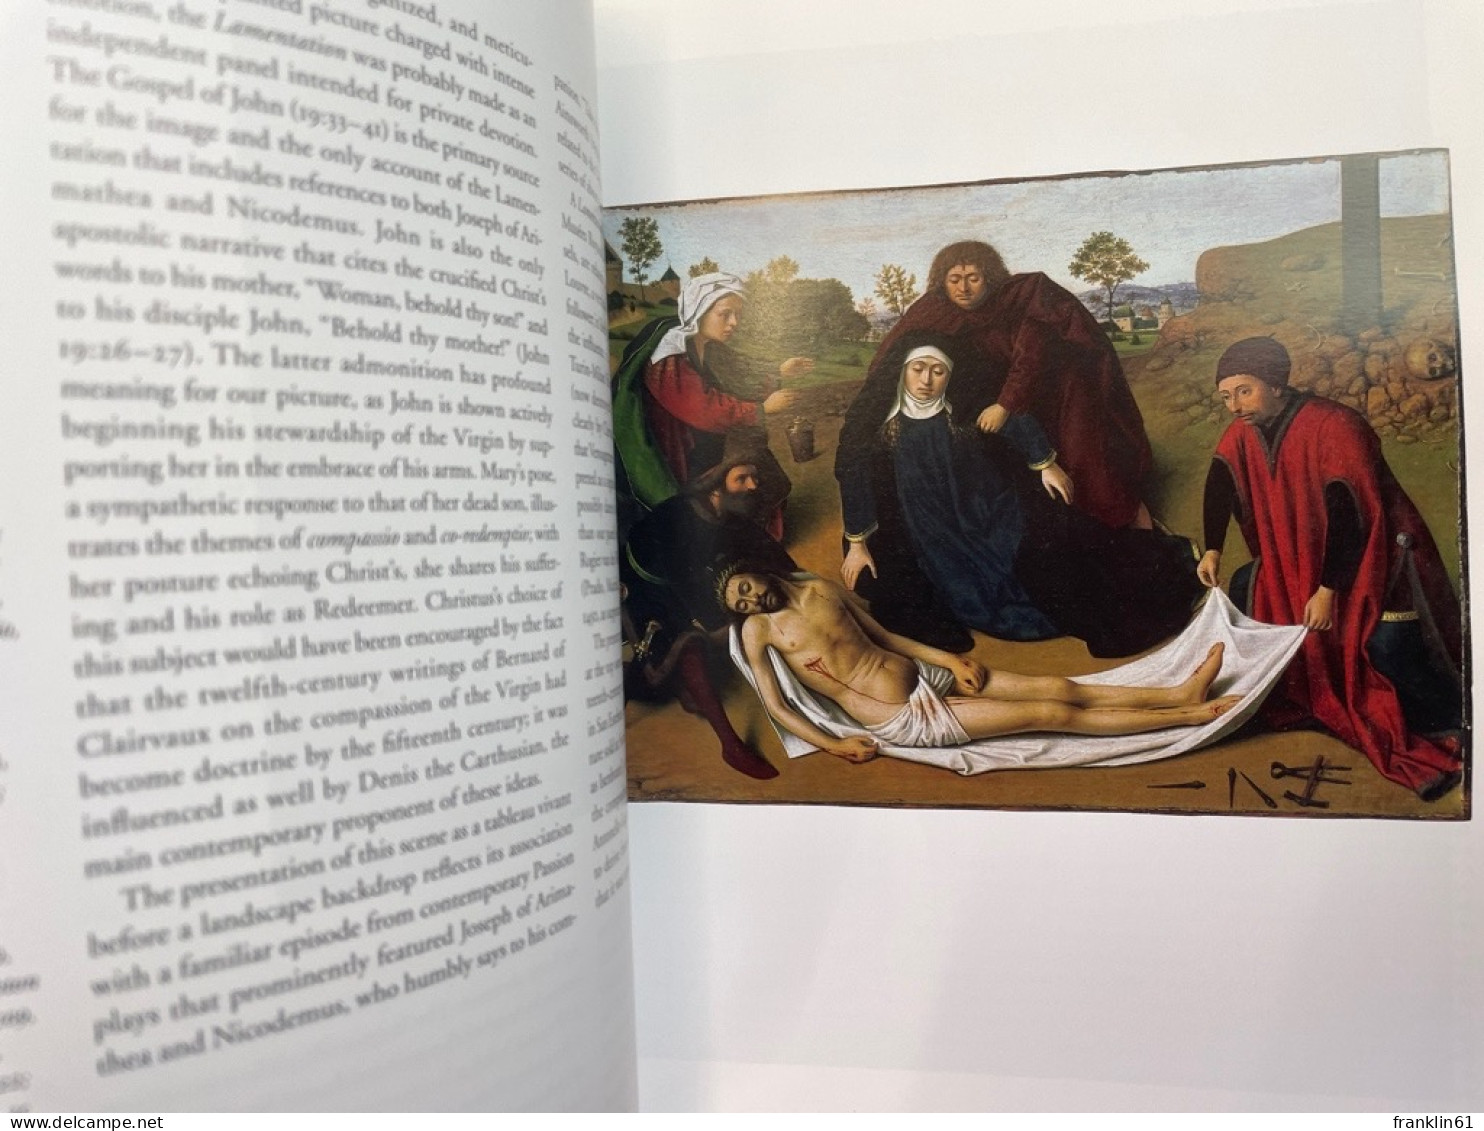 From Van Eyck to Bruegel: Early Netherlandish Paintings in the Metropolitan Museum of Art.